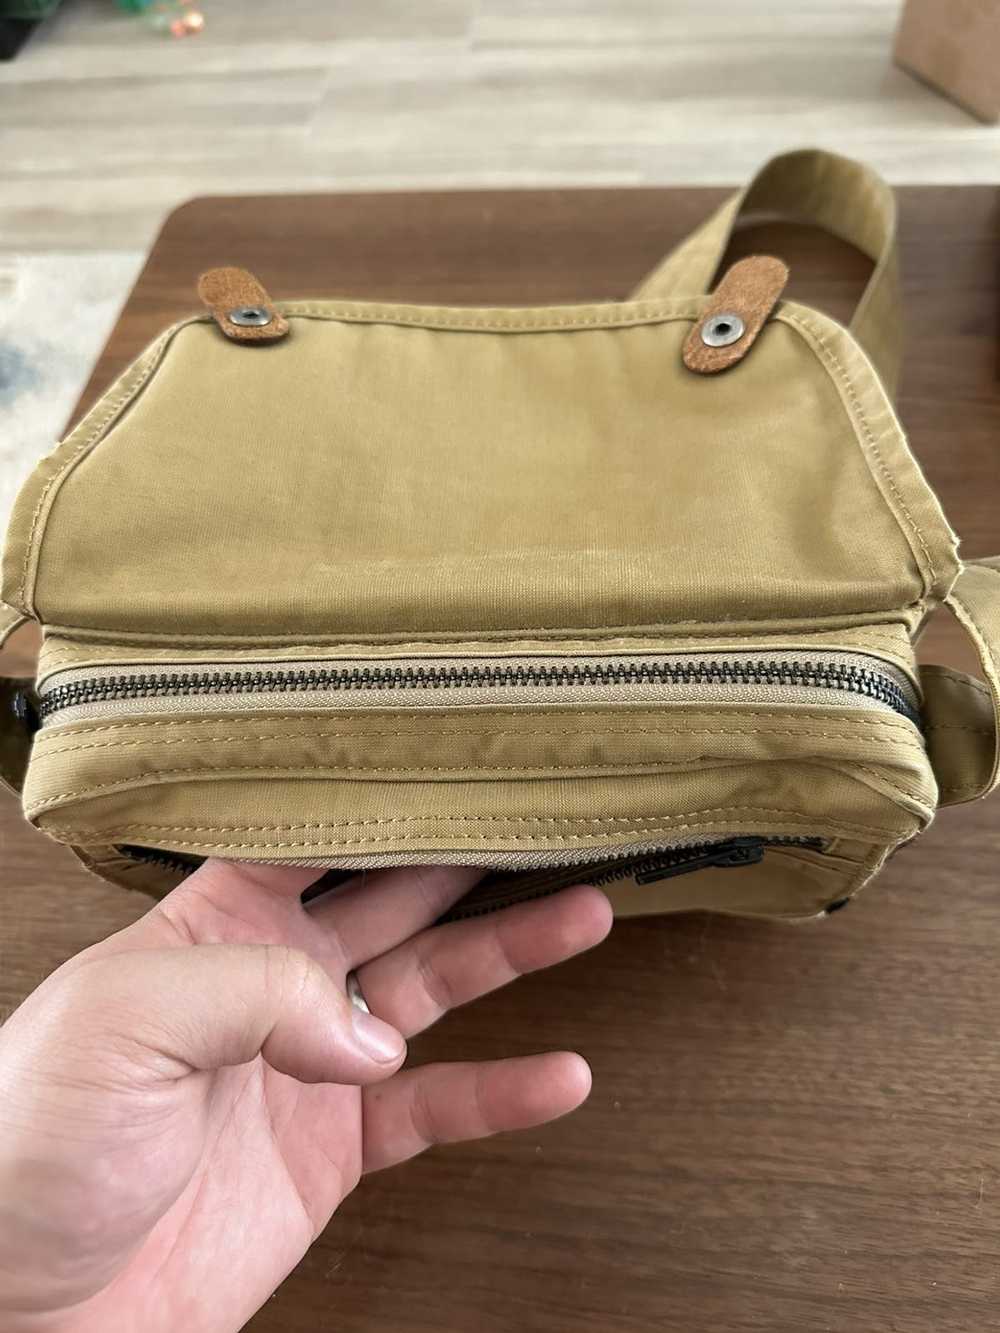 Japanese Brand × Porter Military shoulder bag - image 4